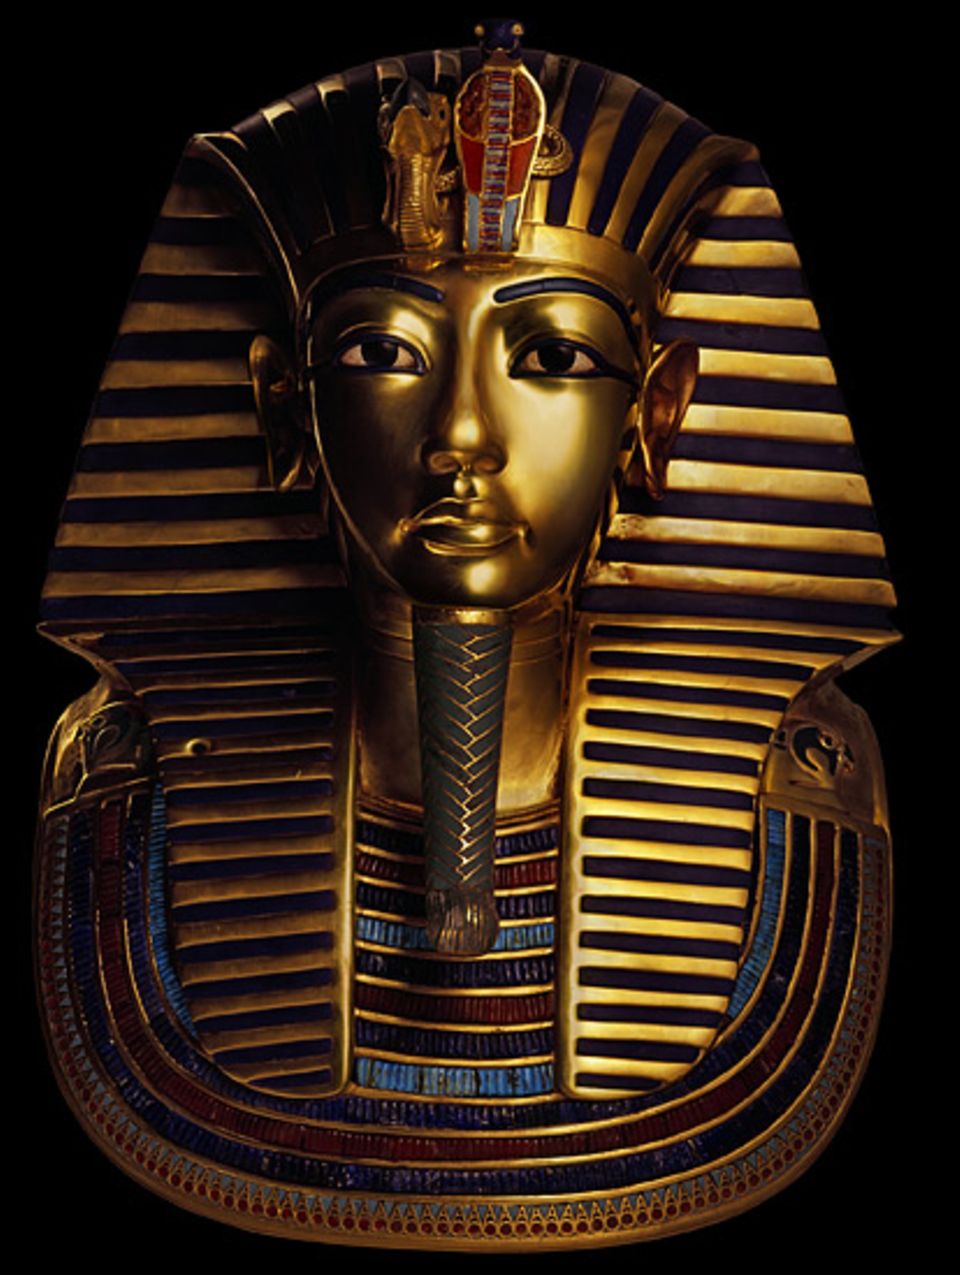 Altes Ägypten: Diese Totenmaske (hier in einer Reproduktion für die Ausstellung "Tutanchamun - Sein Grab und die Schätze") bedeckte einst das Antlitz der Mumie des um 1323 v. Chr. plötzlich verstorbenen Pharao